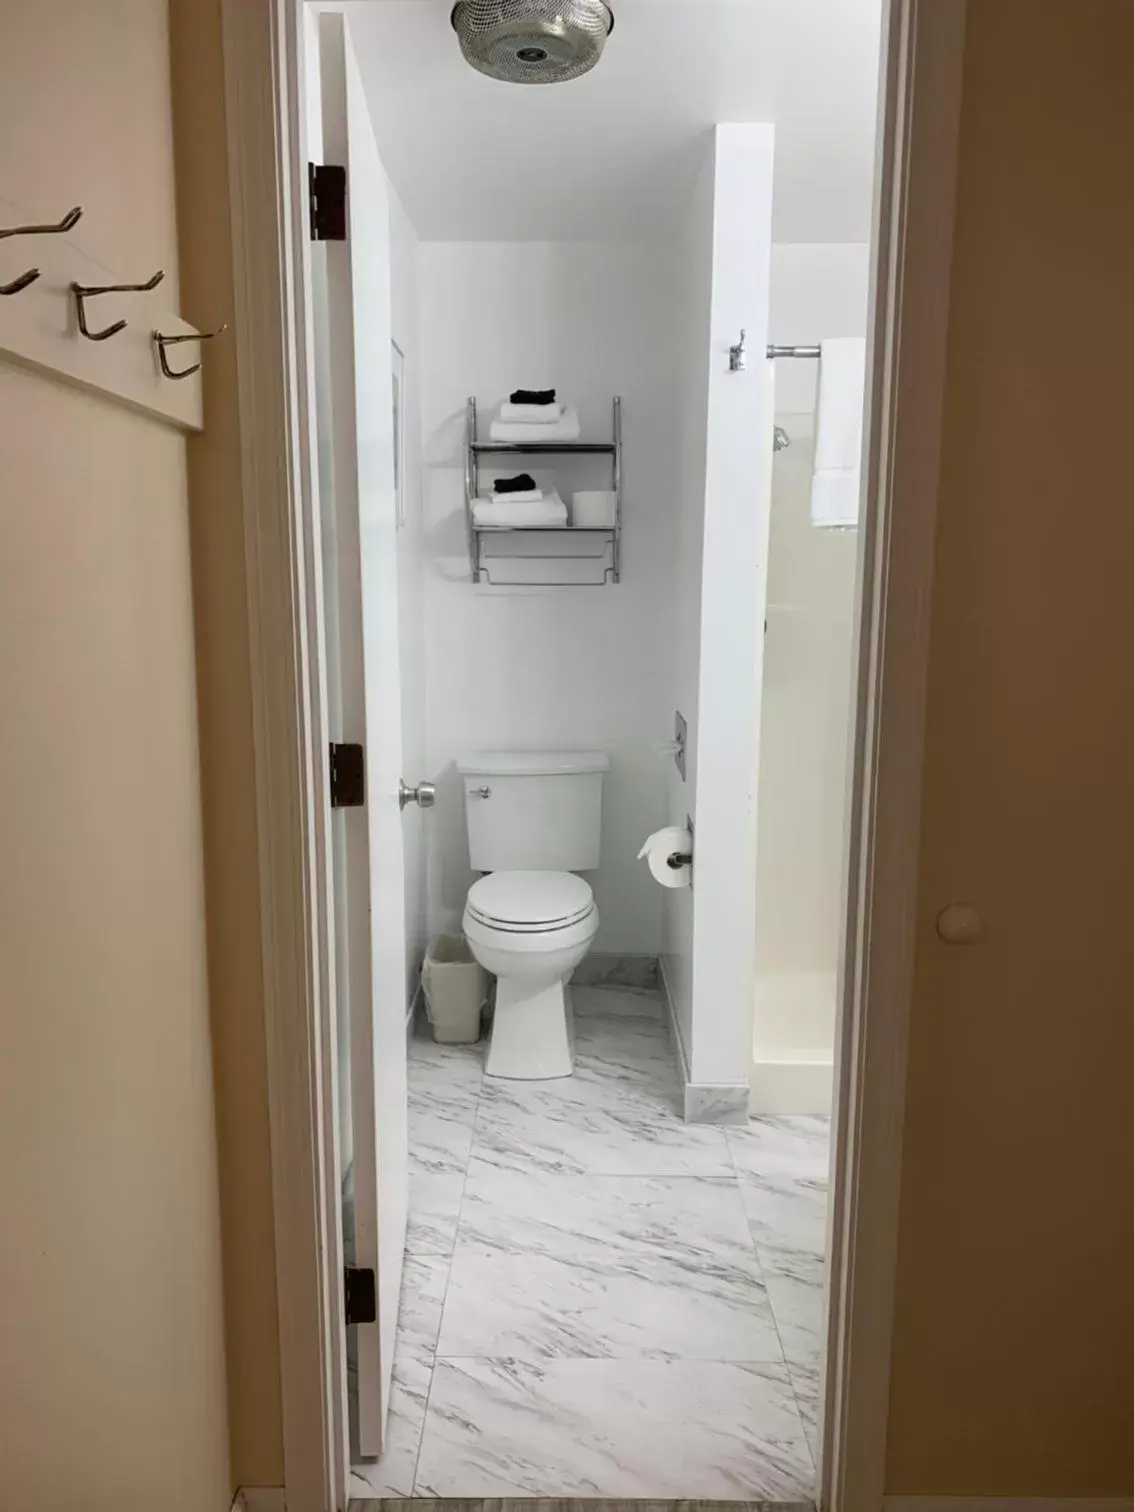 Bathroom in San Dune Inn